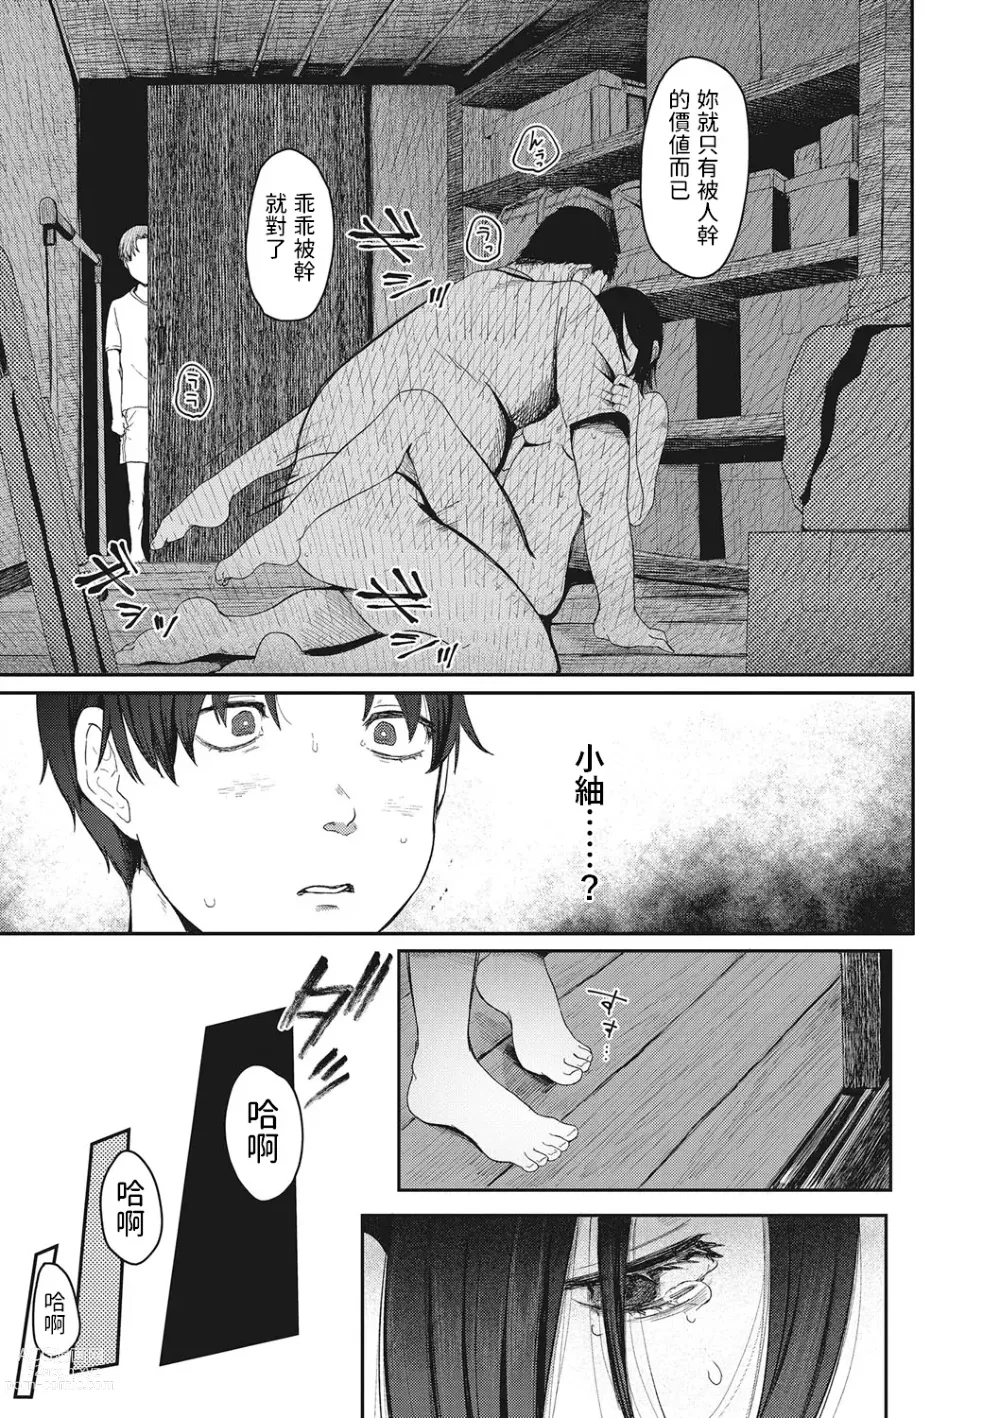 Page 7 of manga Tsuisou no Aza